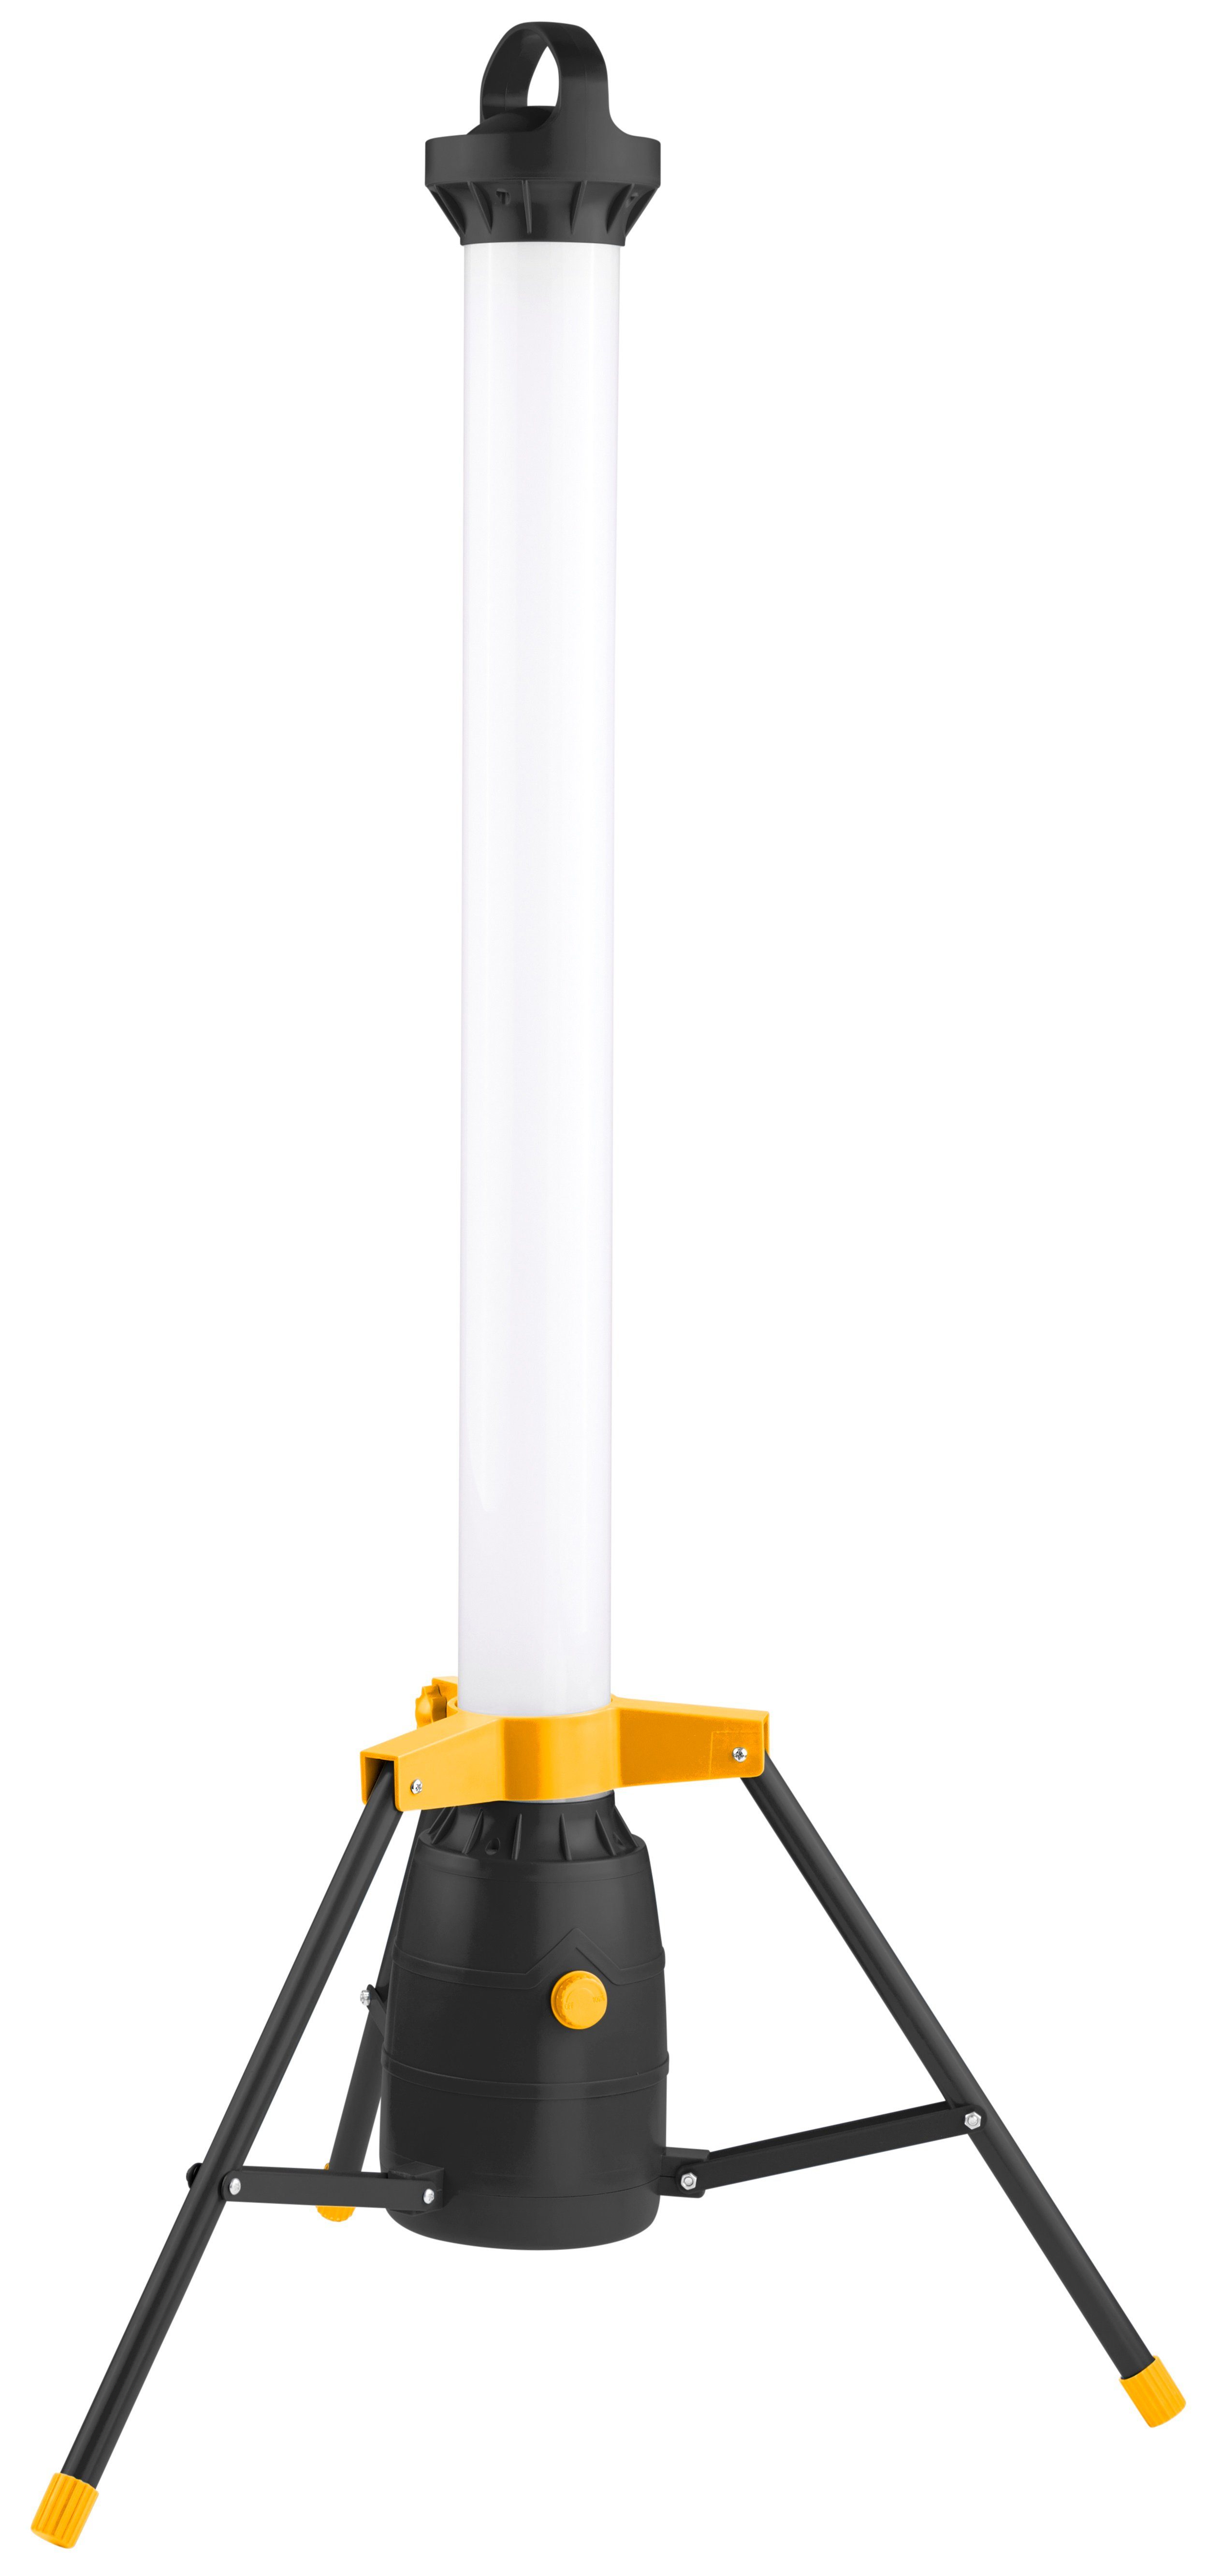 Northpoint LED 360° 110cm Baustrahler mit LED Baustrahler hoch Lichtauslass Arbeitsstrahler 50W